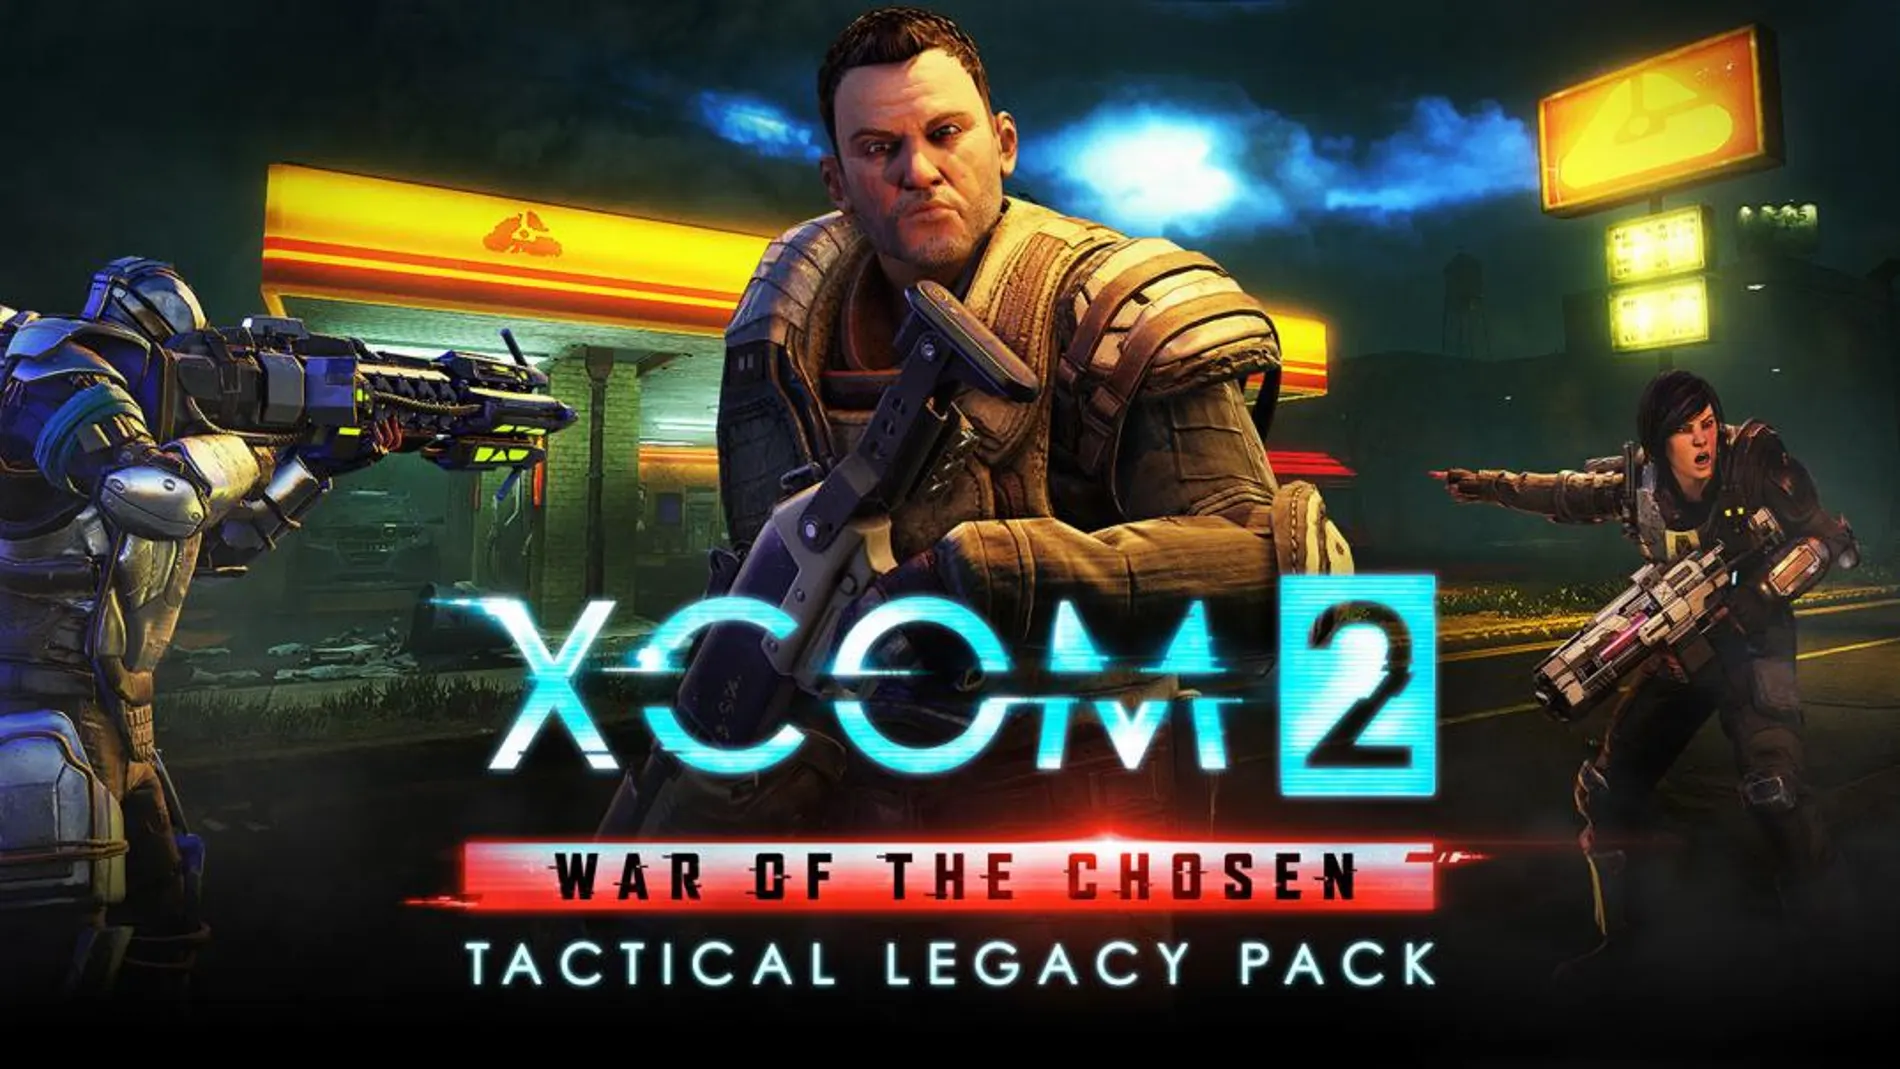 ‘XCOM 2: War of the Chosen